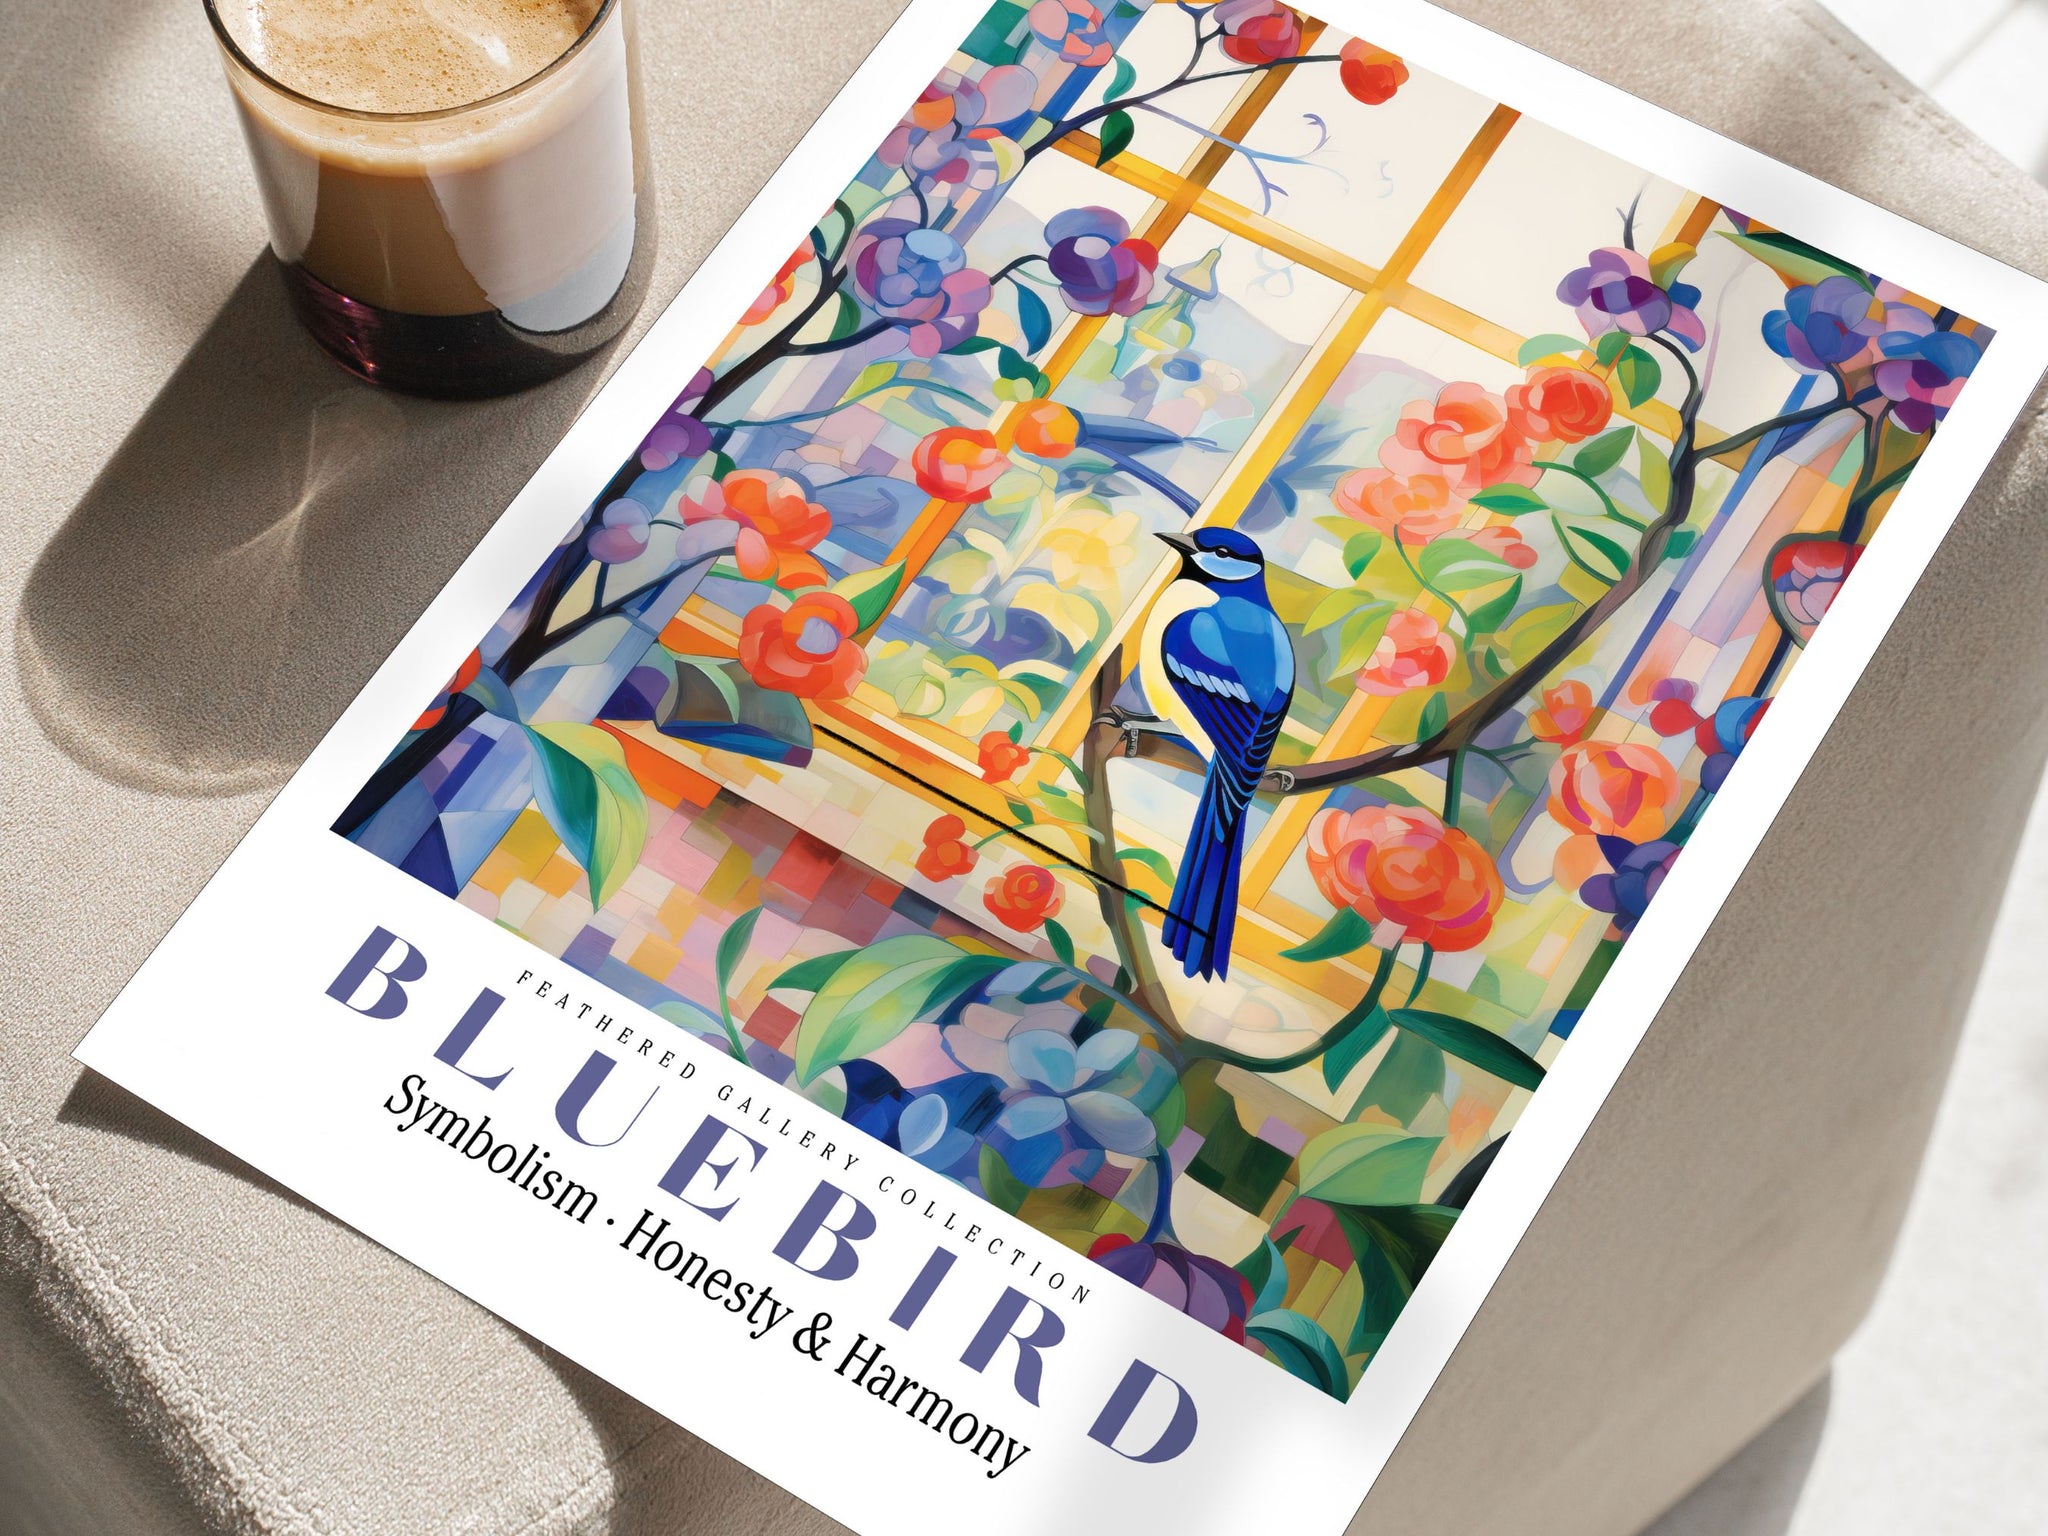 Bluebird Wall Art, bluebird painting, blue Wall Decor, colorful birds, bird wall art, bird art print, animal wall art, floral illustration